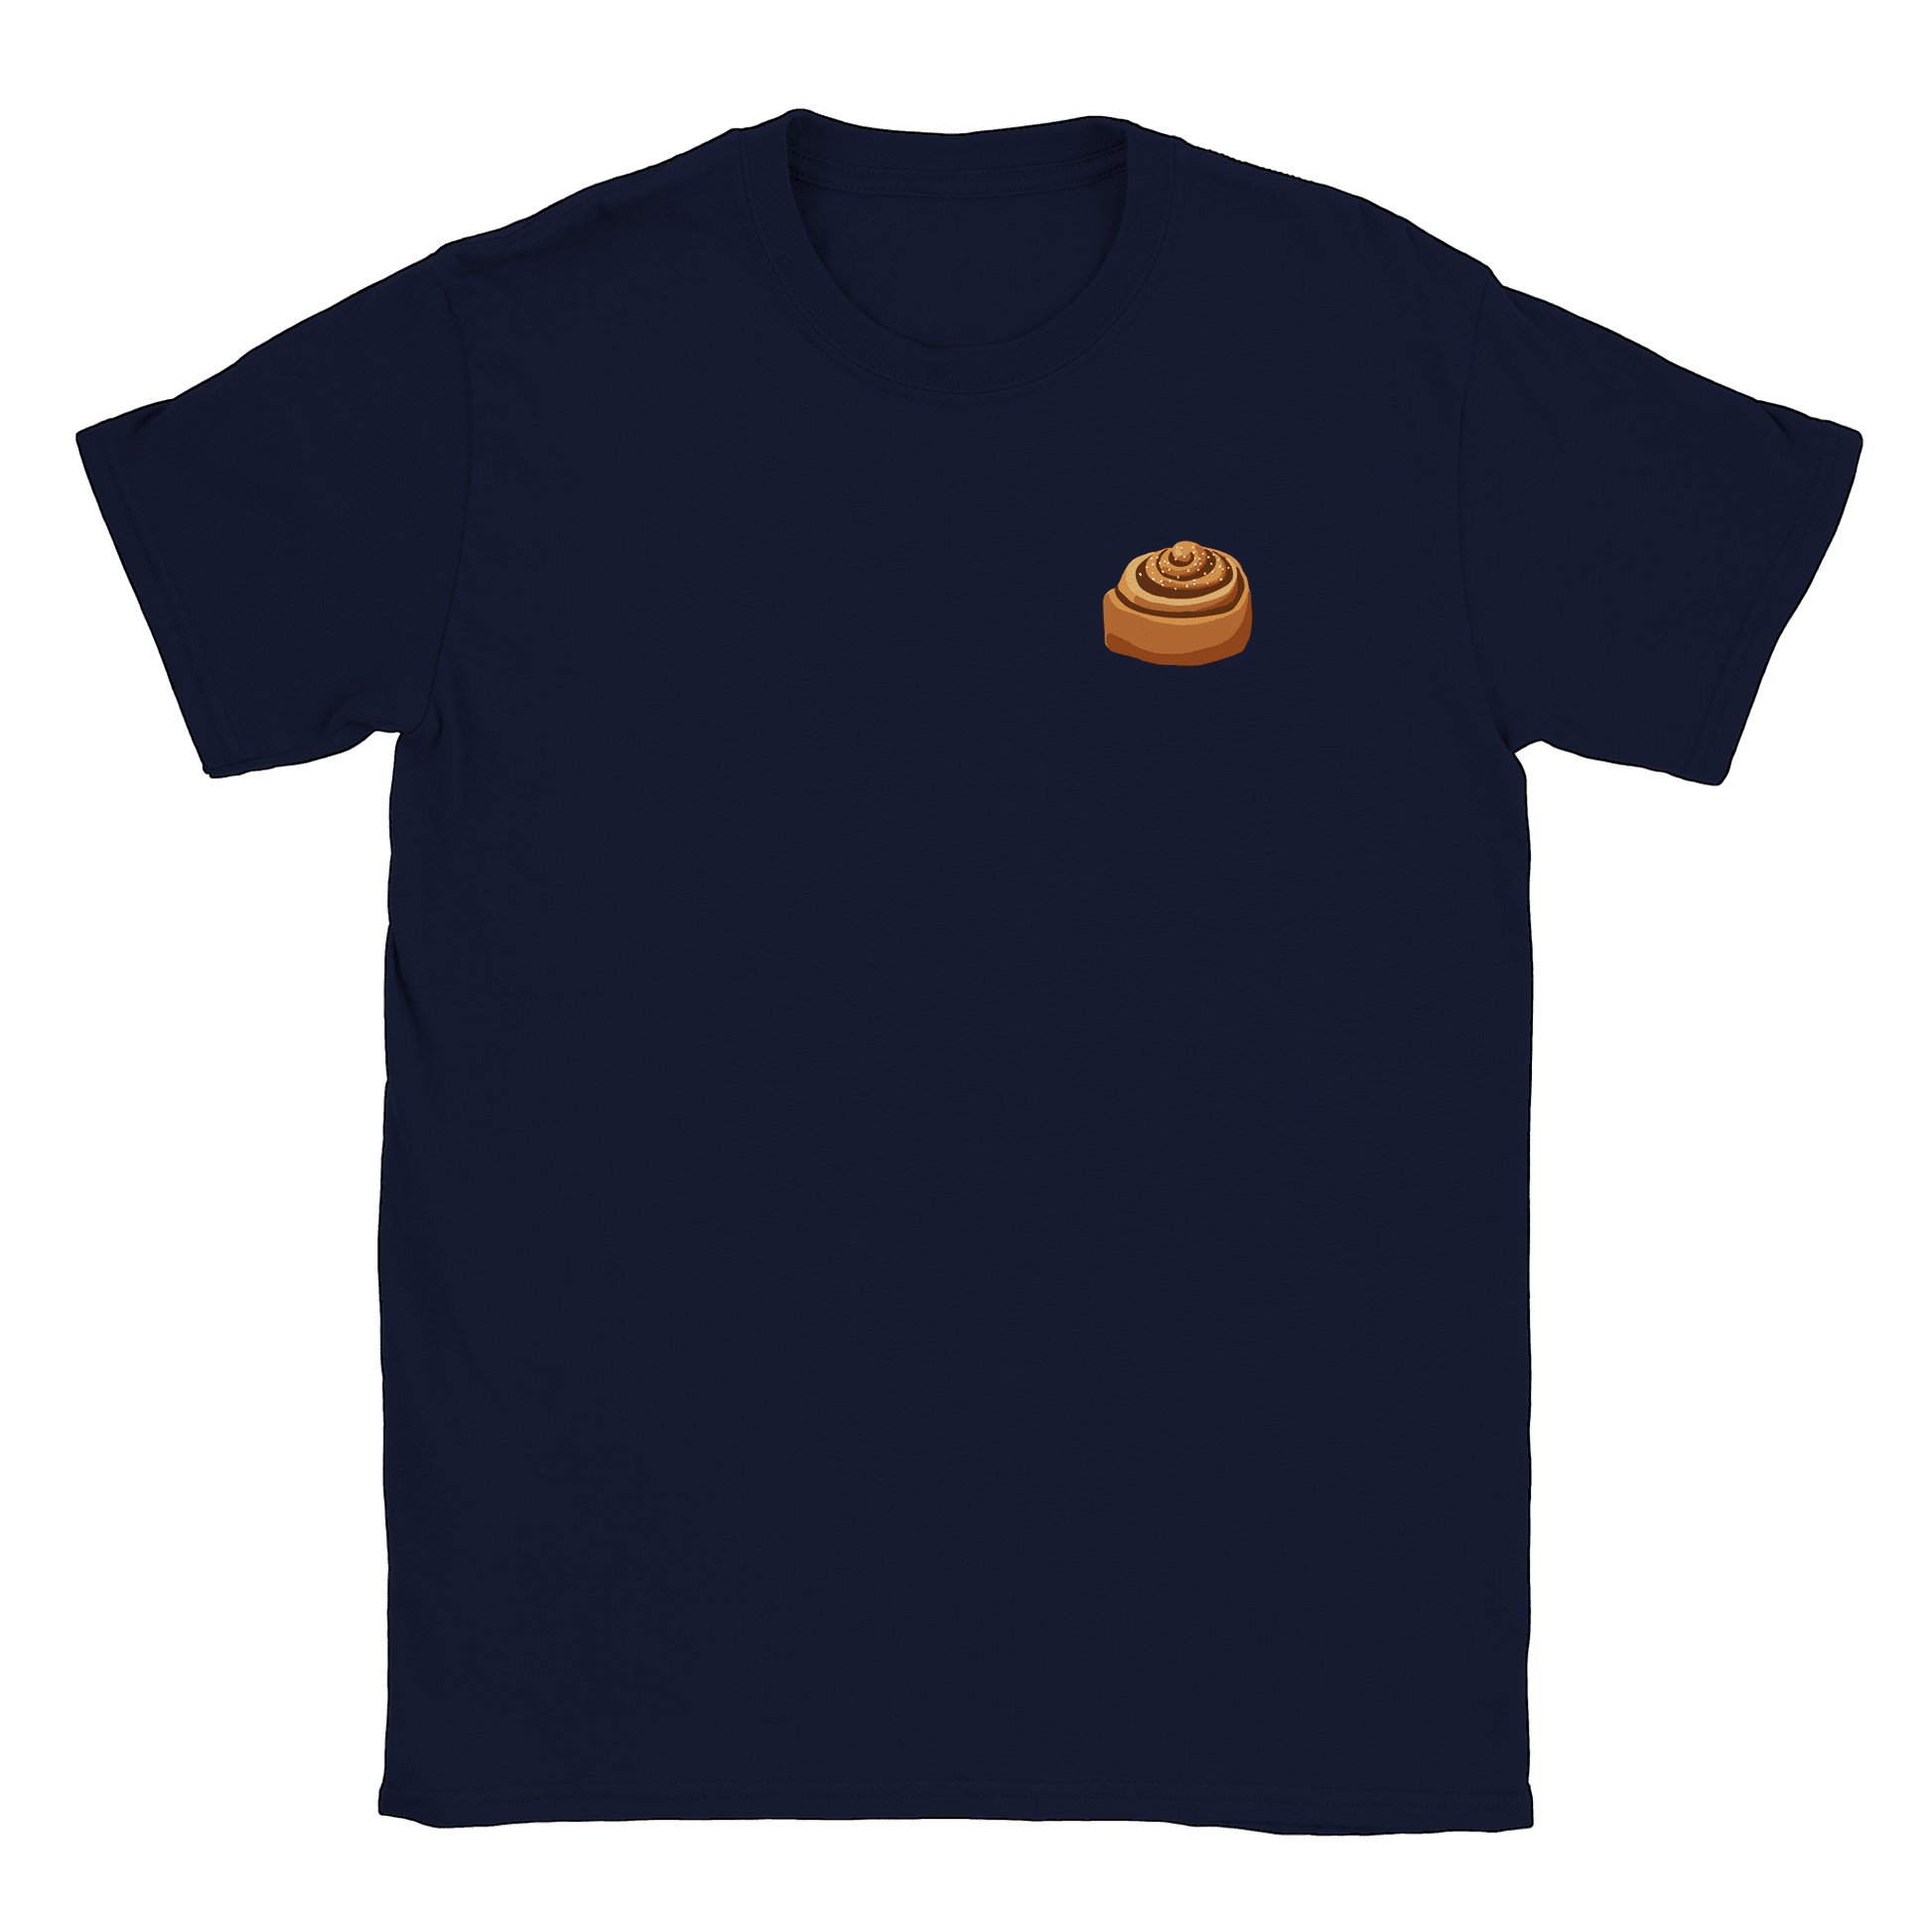 Kanelbulle Liten - T-shirt Navy